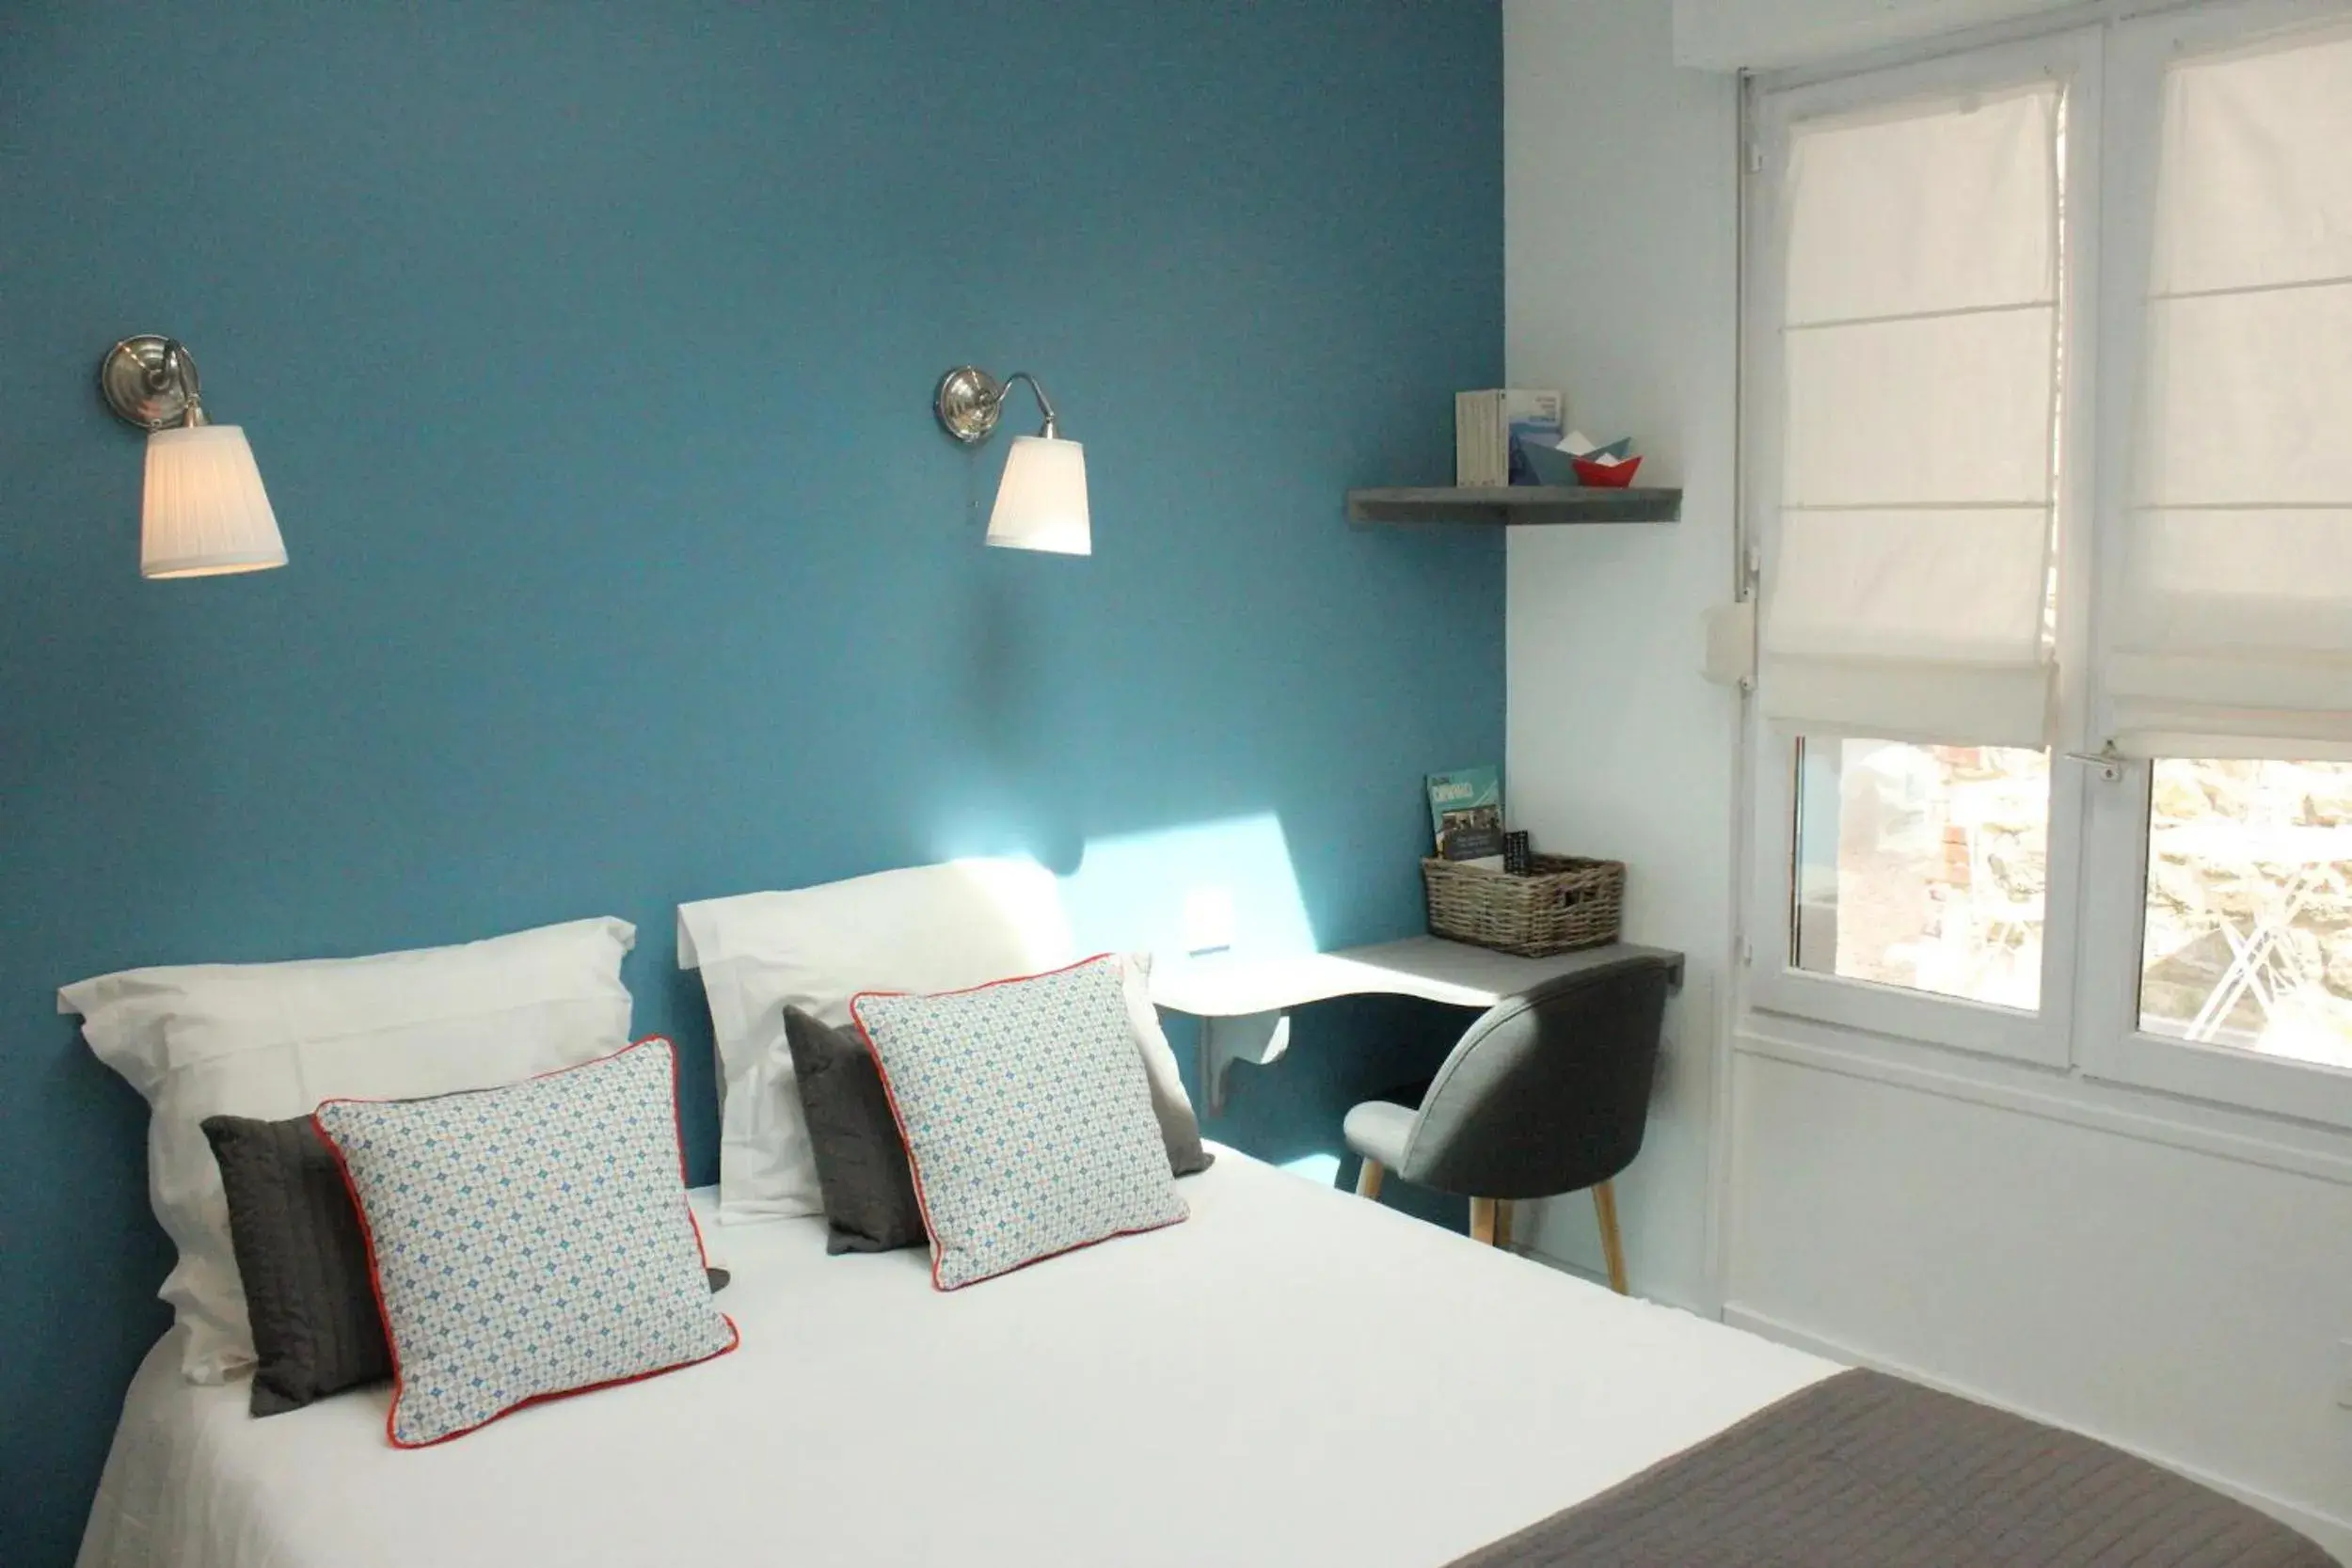 Bedroom, Room Photo in Hotel Saint-Michel